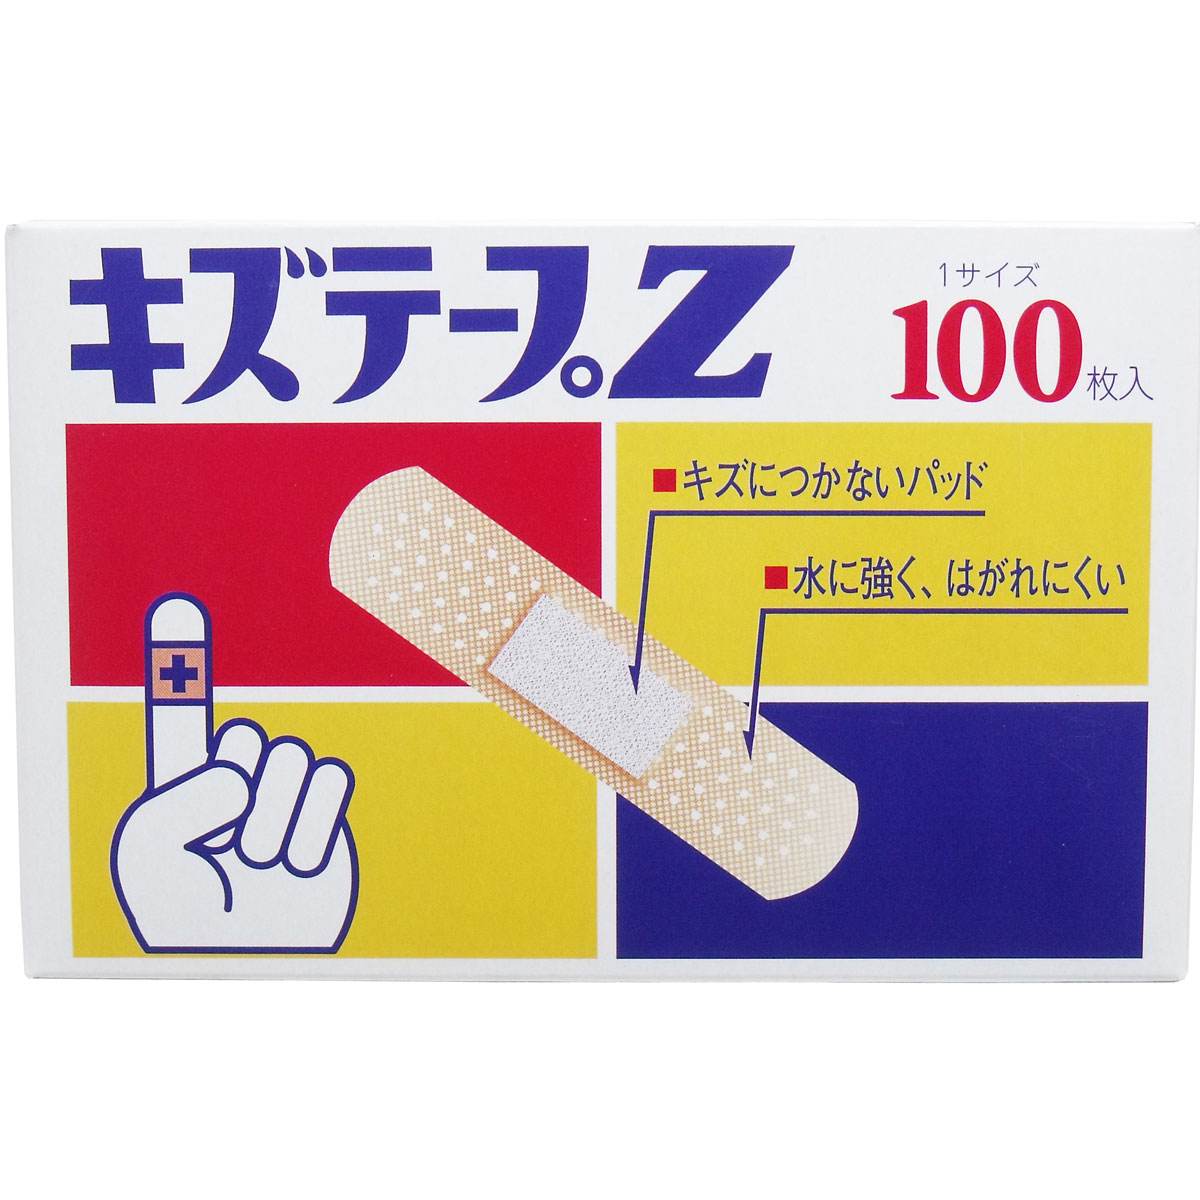 共立薬品工業 共立薬品工業 キズテープ Z Mサイズ 100枚入×15個 絆創膏の商品画像